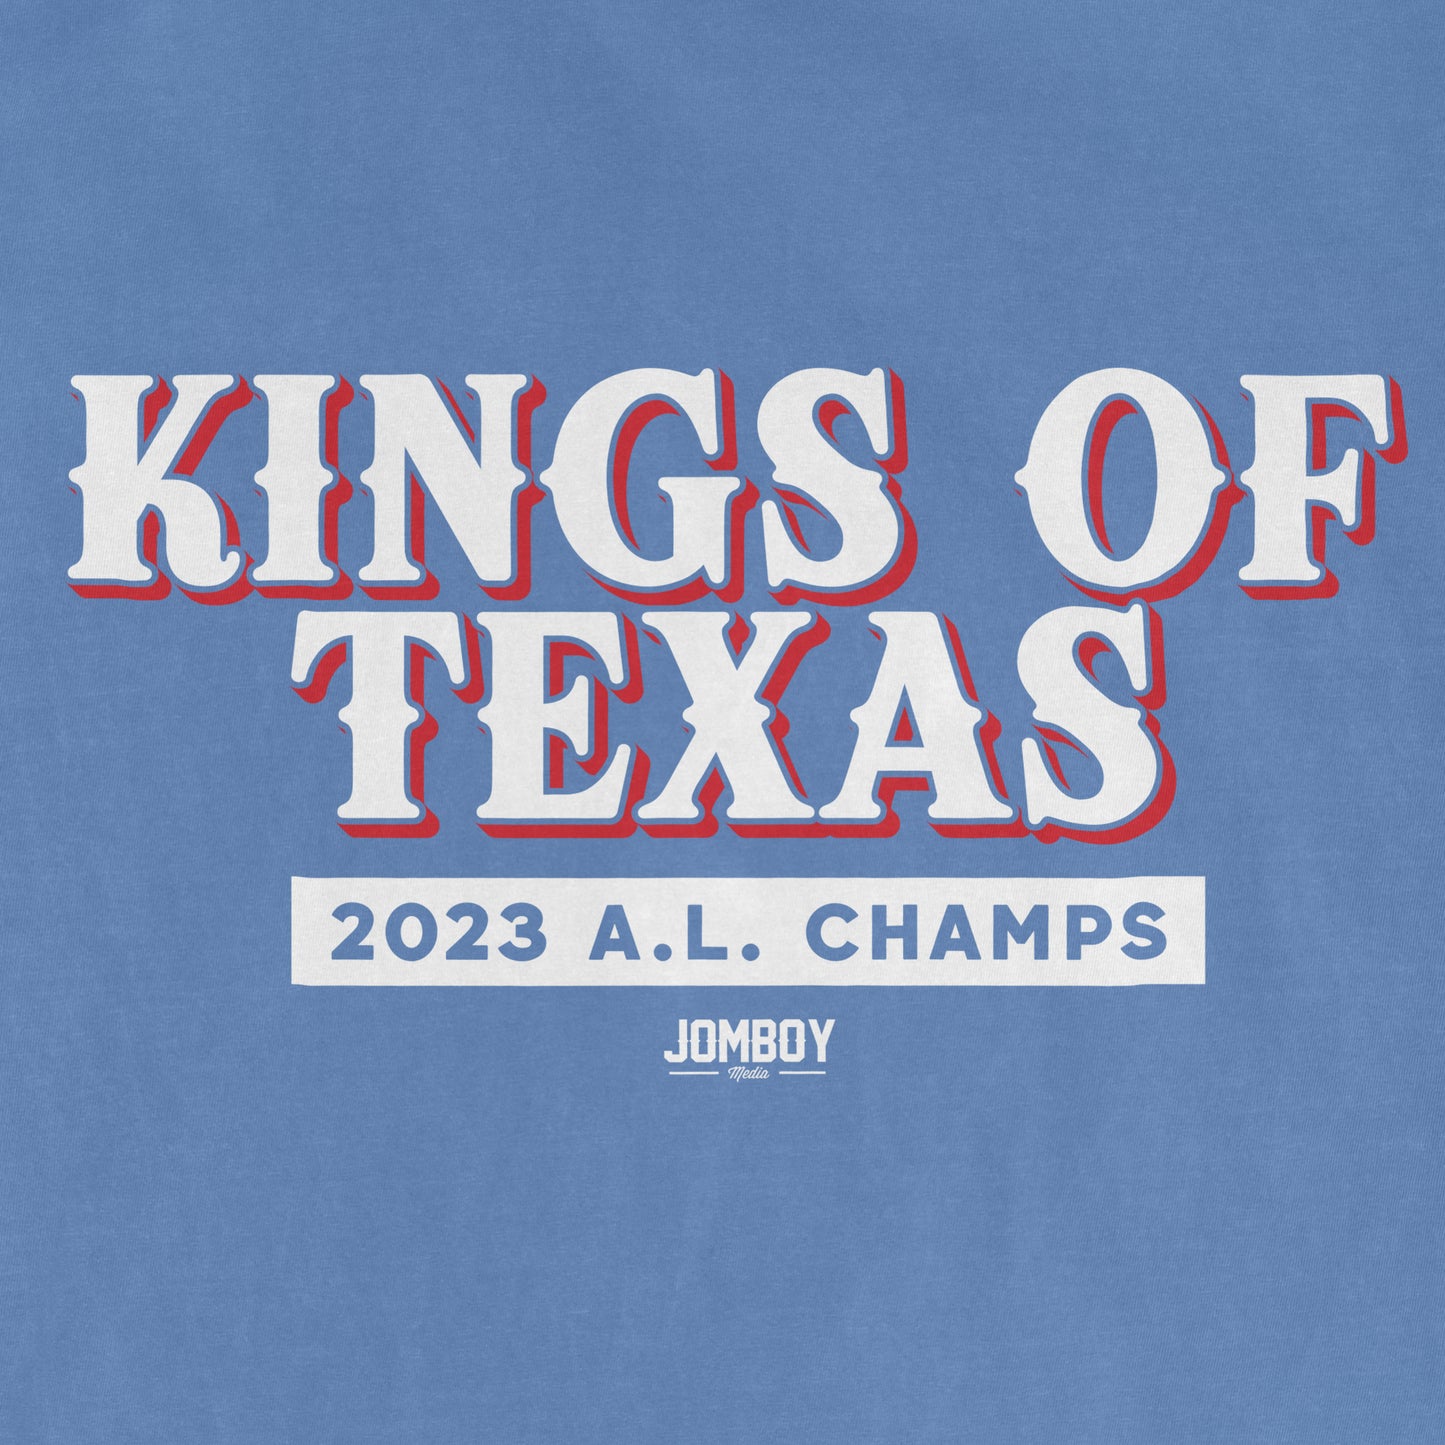 Kings of Texas | Comfort Colors® Vintage Tee